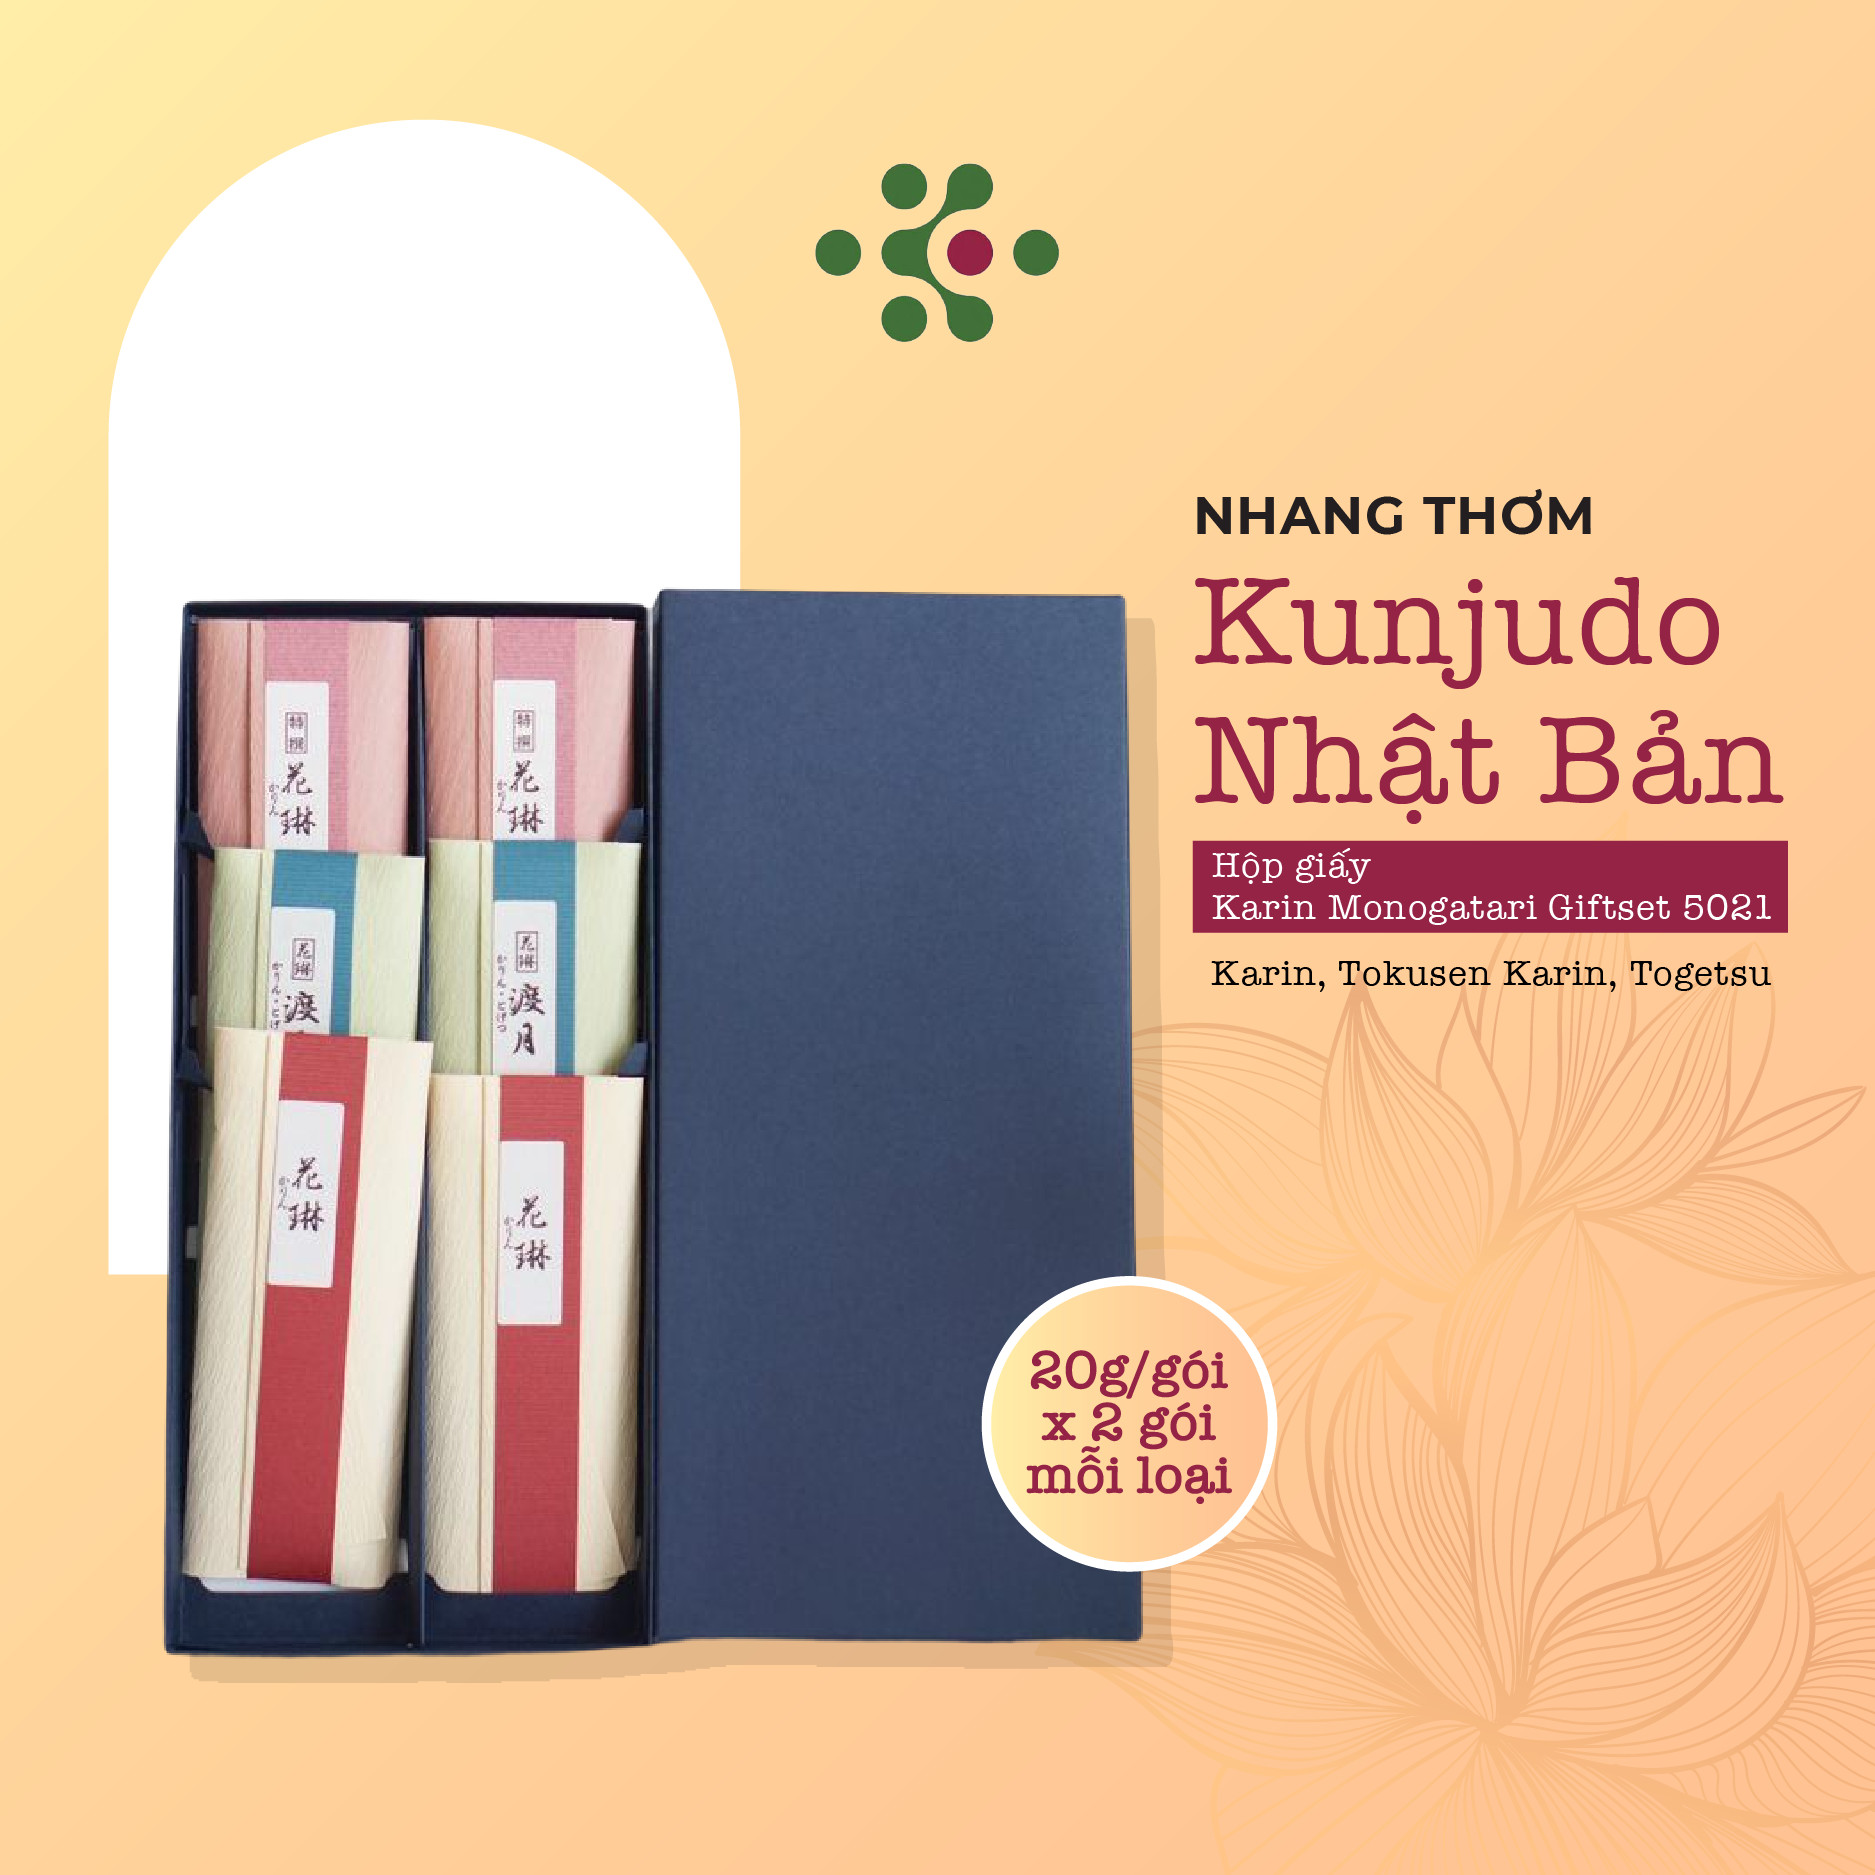 Hộp quà Karin Monogatari Giftset 5021 – 6 gói 3 mùi hương từ thương hiệu nhang thơm cao cấp Kunjudo Nhật Bản